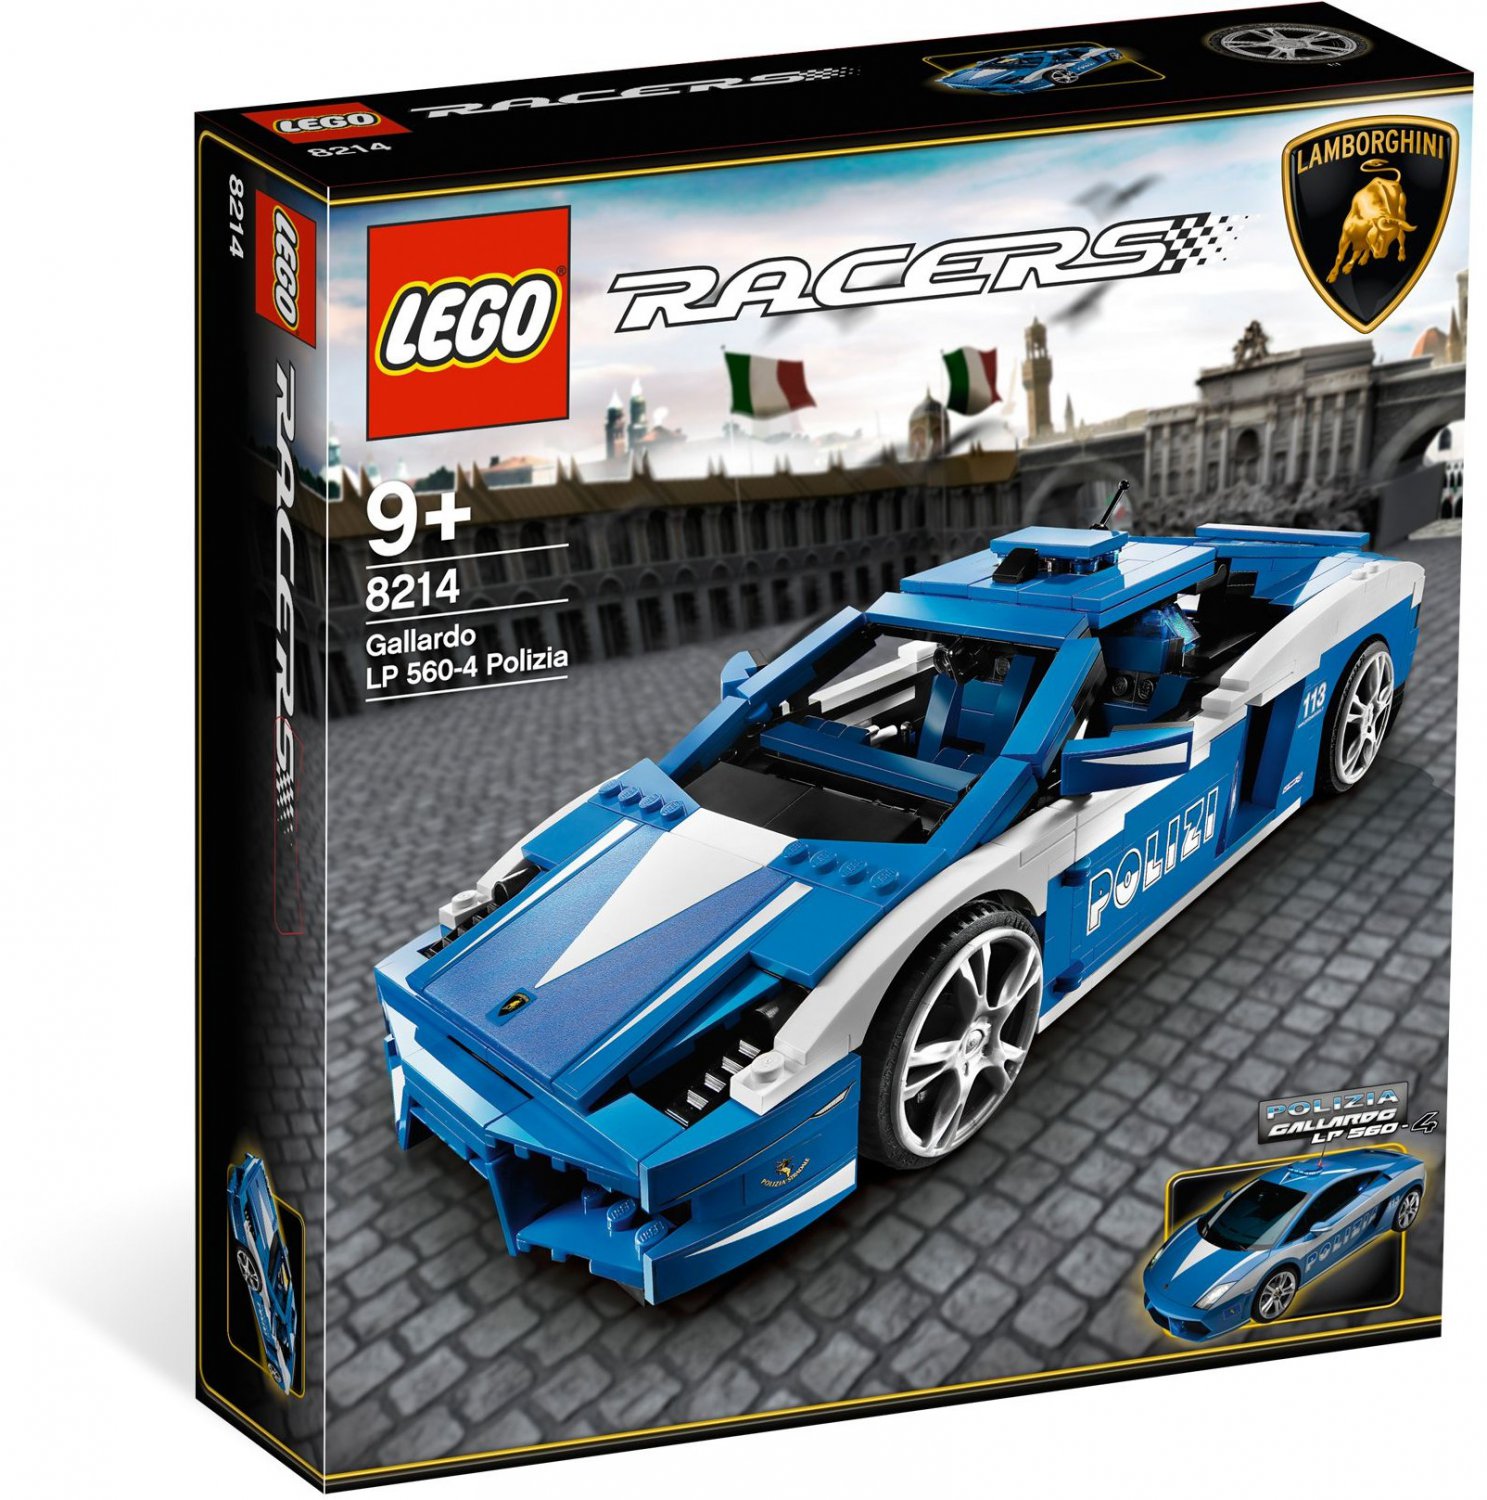 2010 Lego Racers:Lamborghini Gallardo LP 560-4 Polizia 8214